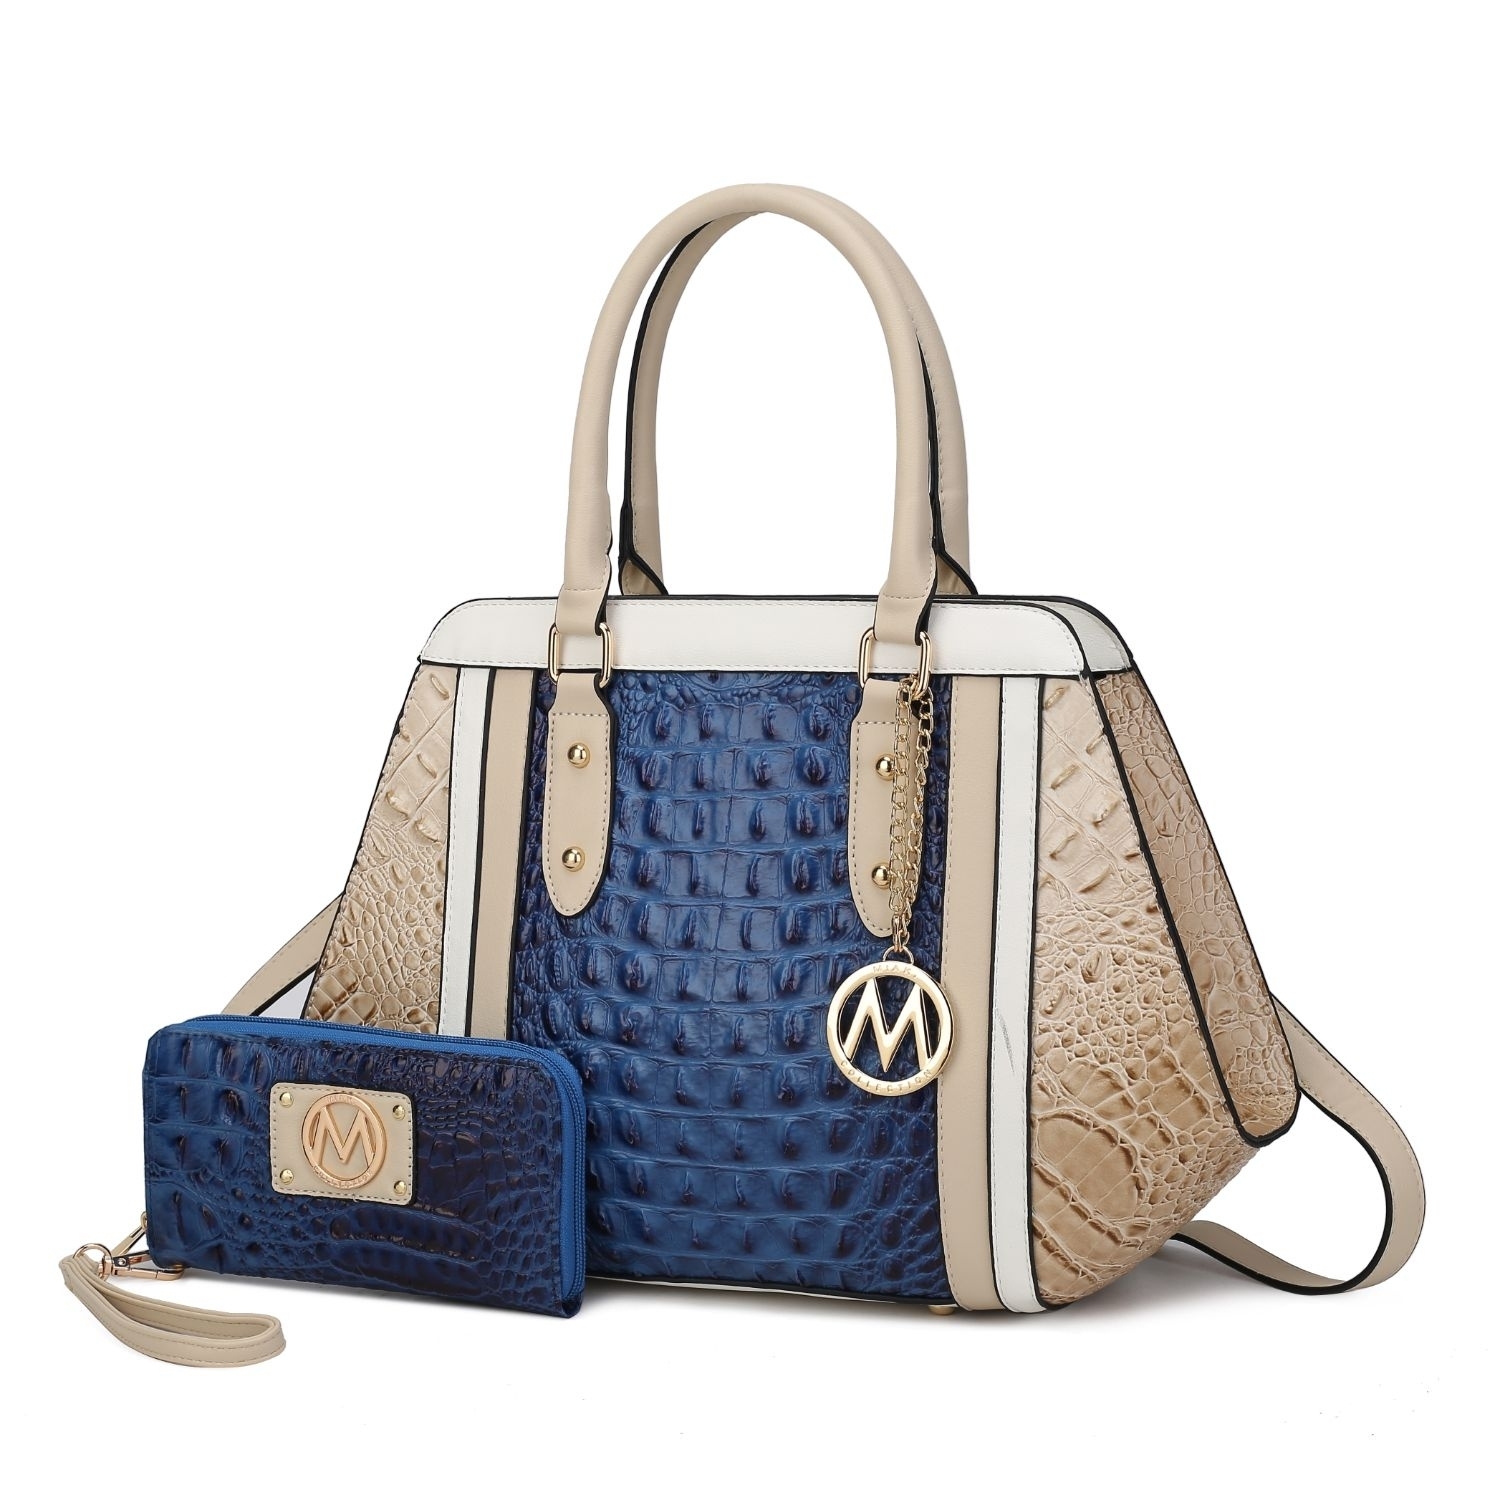 MKF Collection Daisy 2 Pcs Croco Satchel Handbag & Wallet By Mia K. - Gray Navy